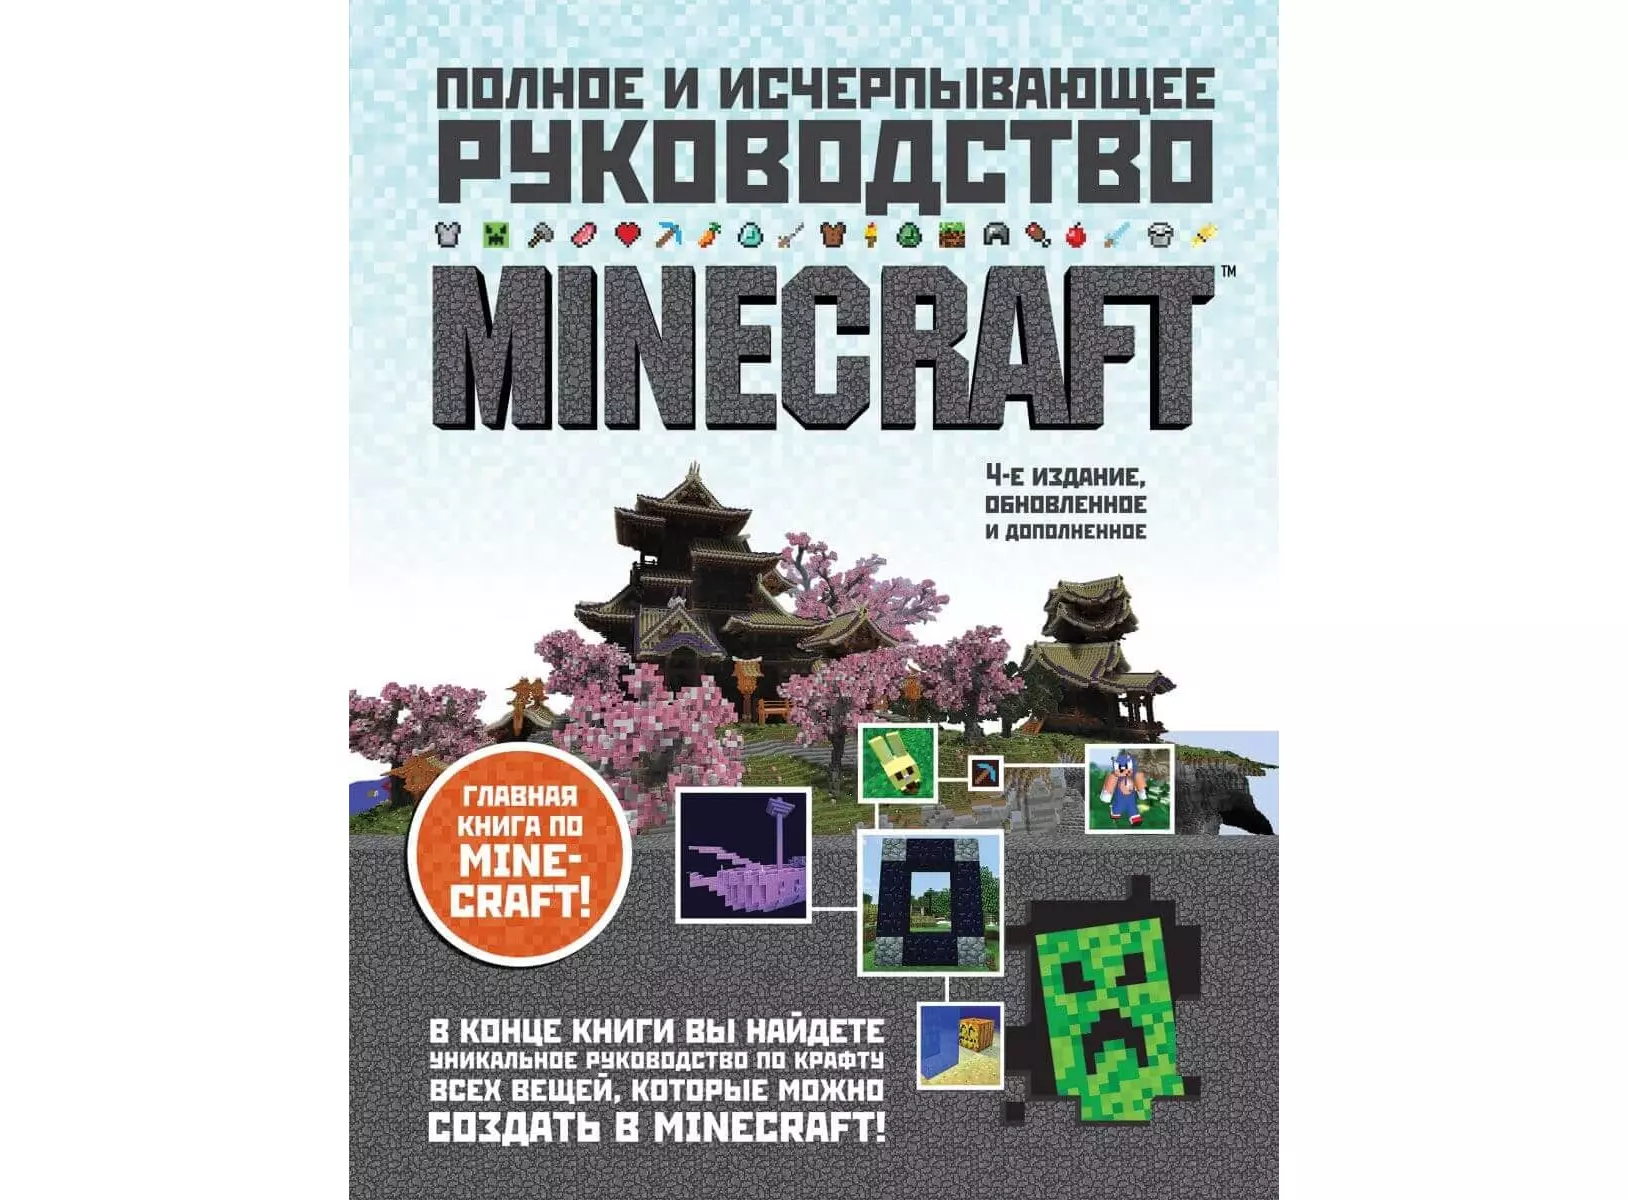 Суть книги майнкрафт. Книги по майнкрафту. Полное и исчерпывающее руководство Minecraft. Книга майнкрафт руководство. Полное и исчерпывающее руководство Minecraft 4-е издание.